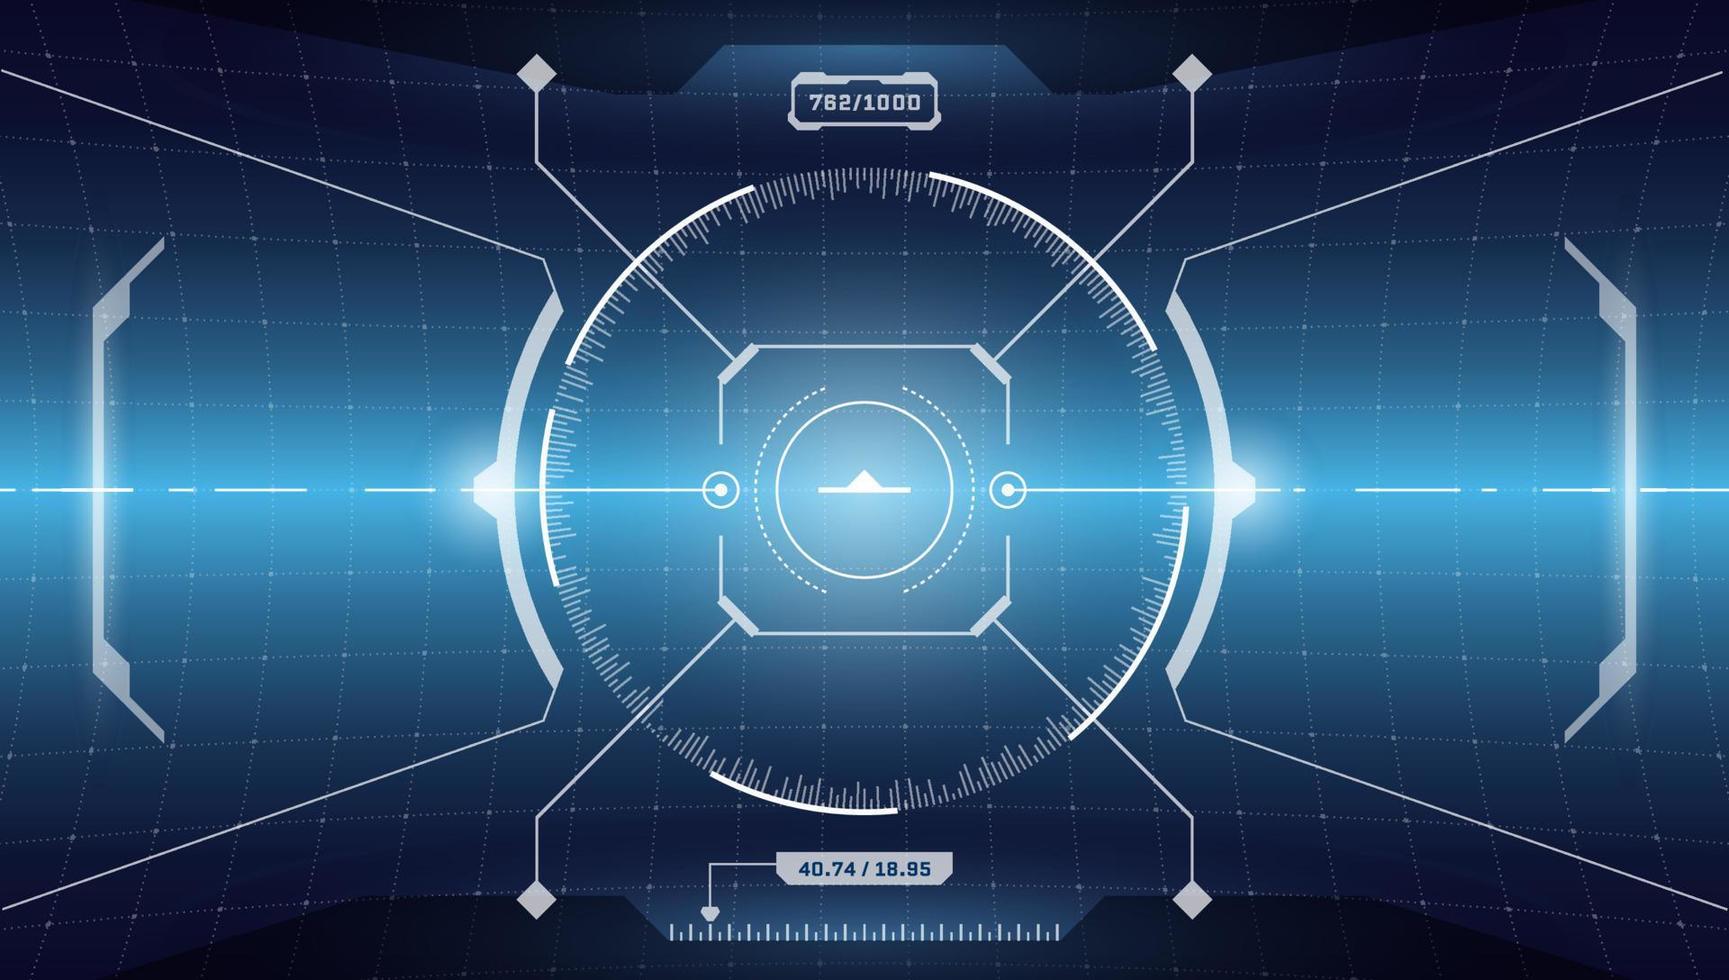 vr hud digital interface futurista tela cyberpunk. sci-fi tecnologia virtual head up display círculo alvo. painel do painel do cockpit da nave espacial gui ui. ilustração em vetor eps de visor de visor fui